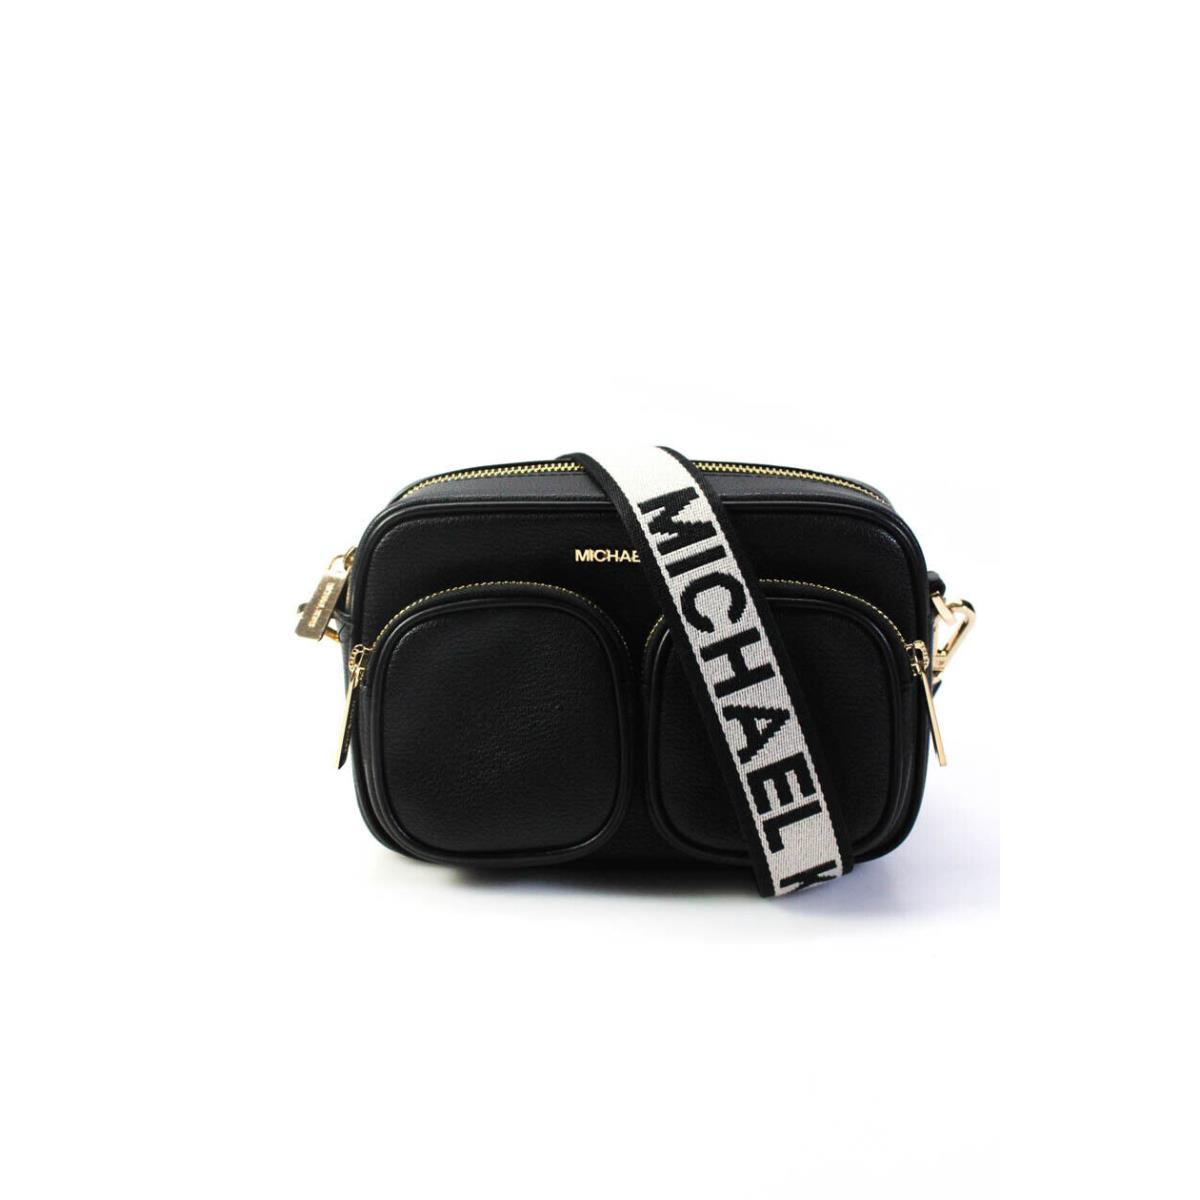 Kors Womens Black Medium Pocket Attach Crossbody Bag Handbag